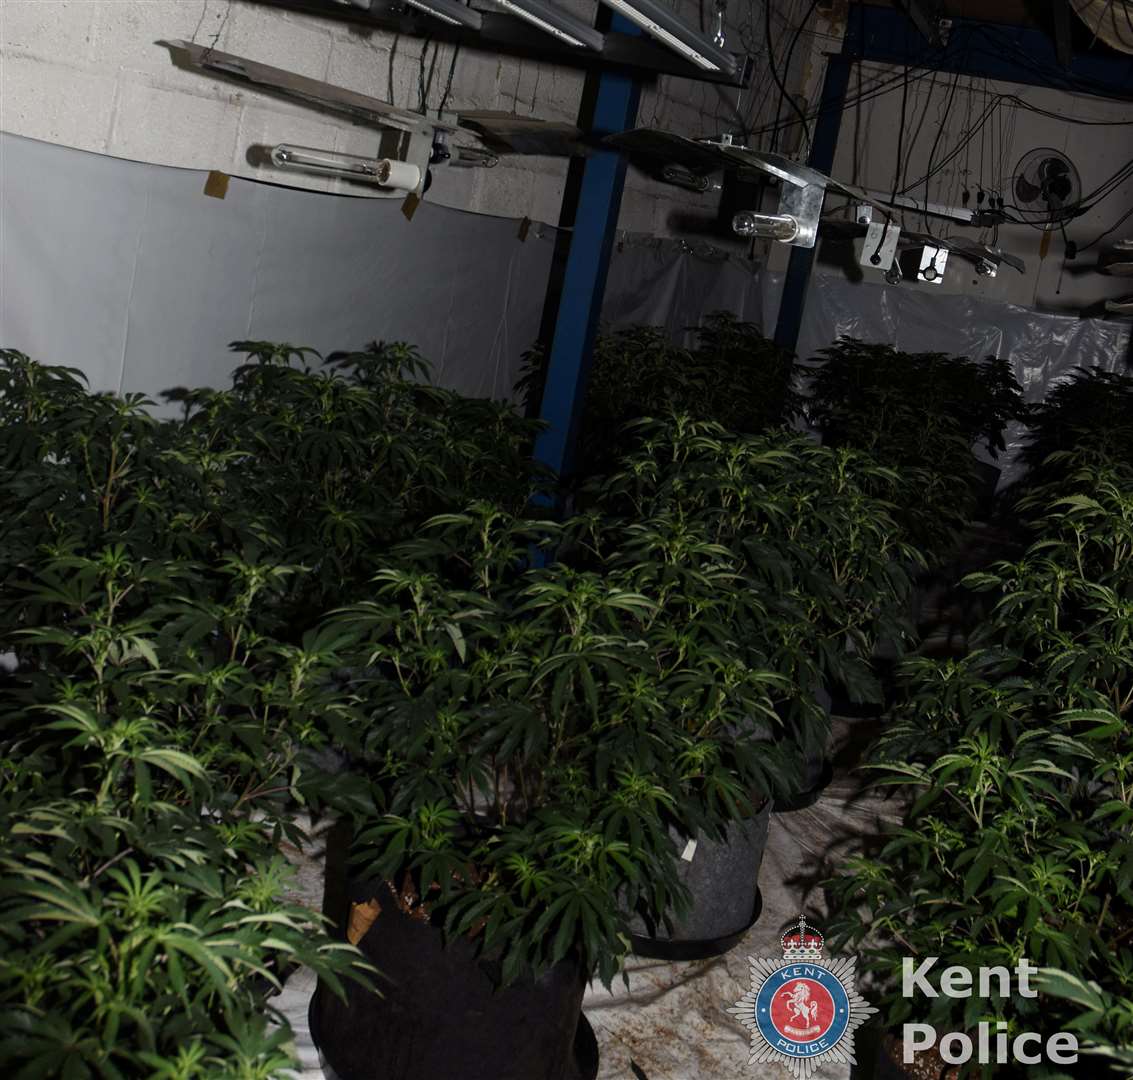 More than 300 cannabis plants were seized